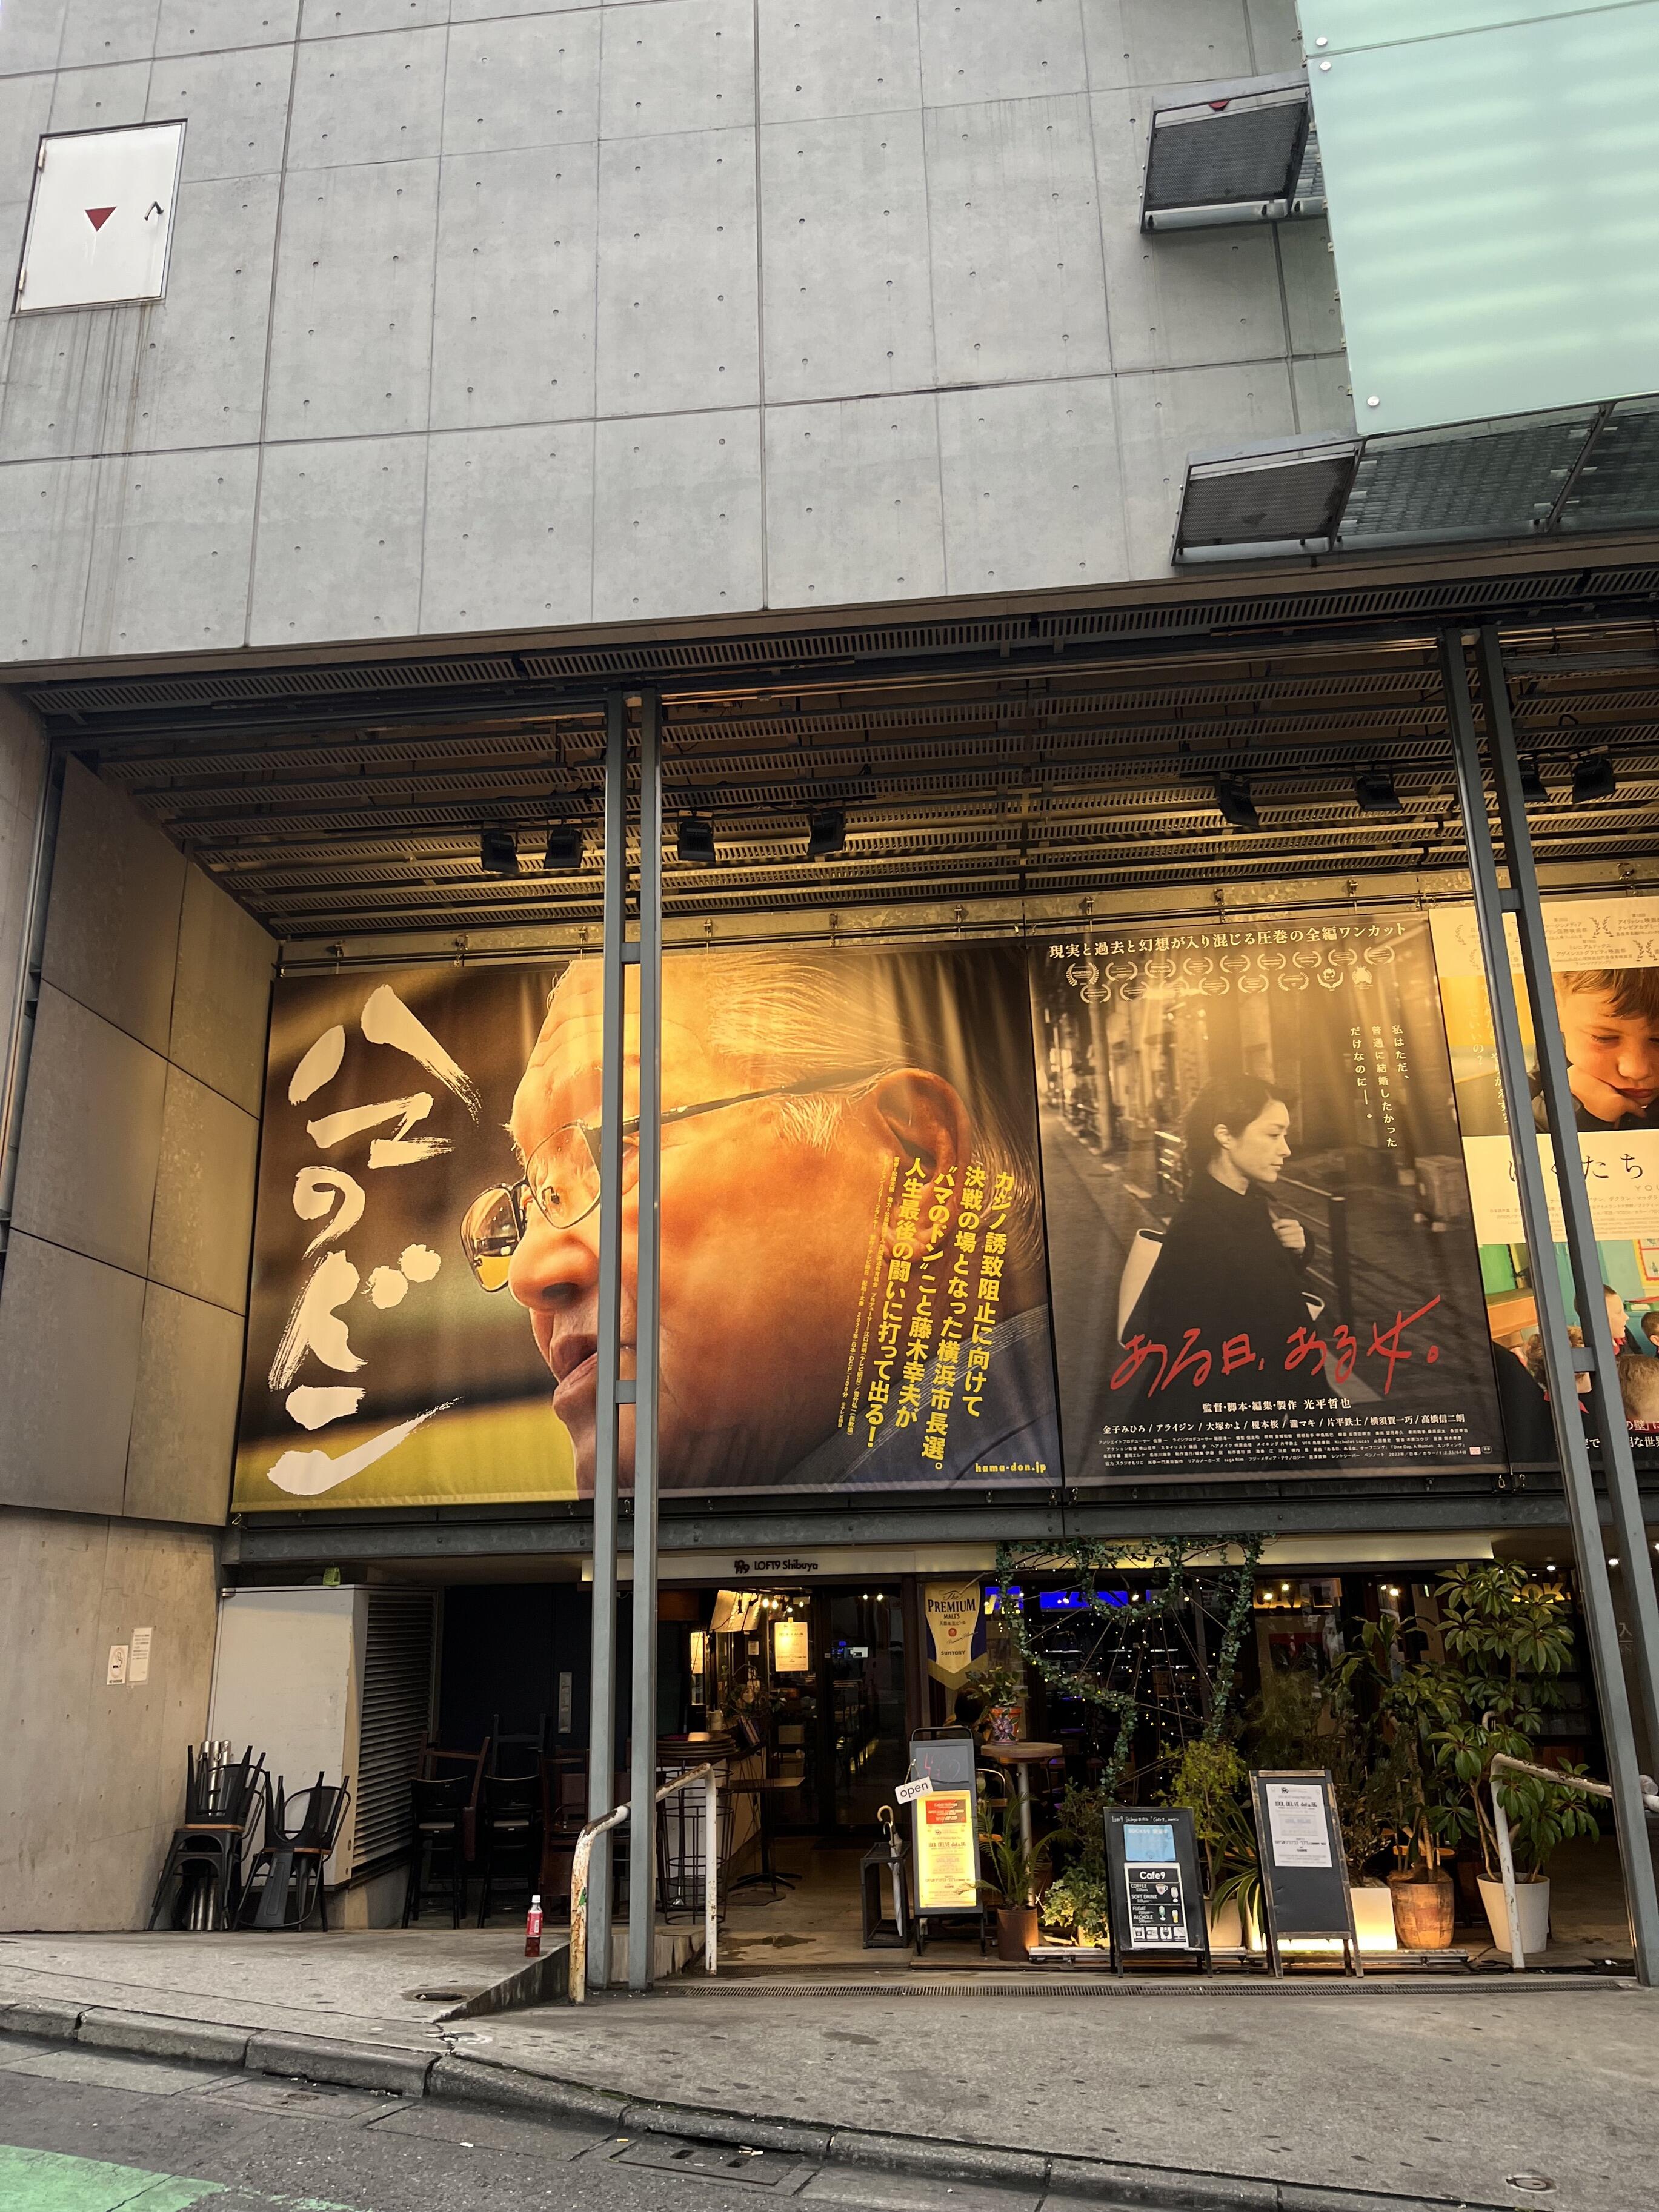 ユーロスペース - 渋谷区円山町/映画館 | Yahoo!マップ